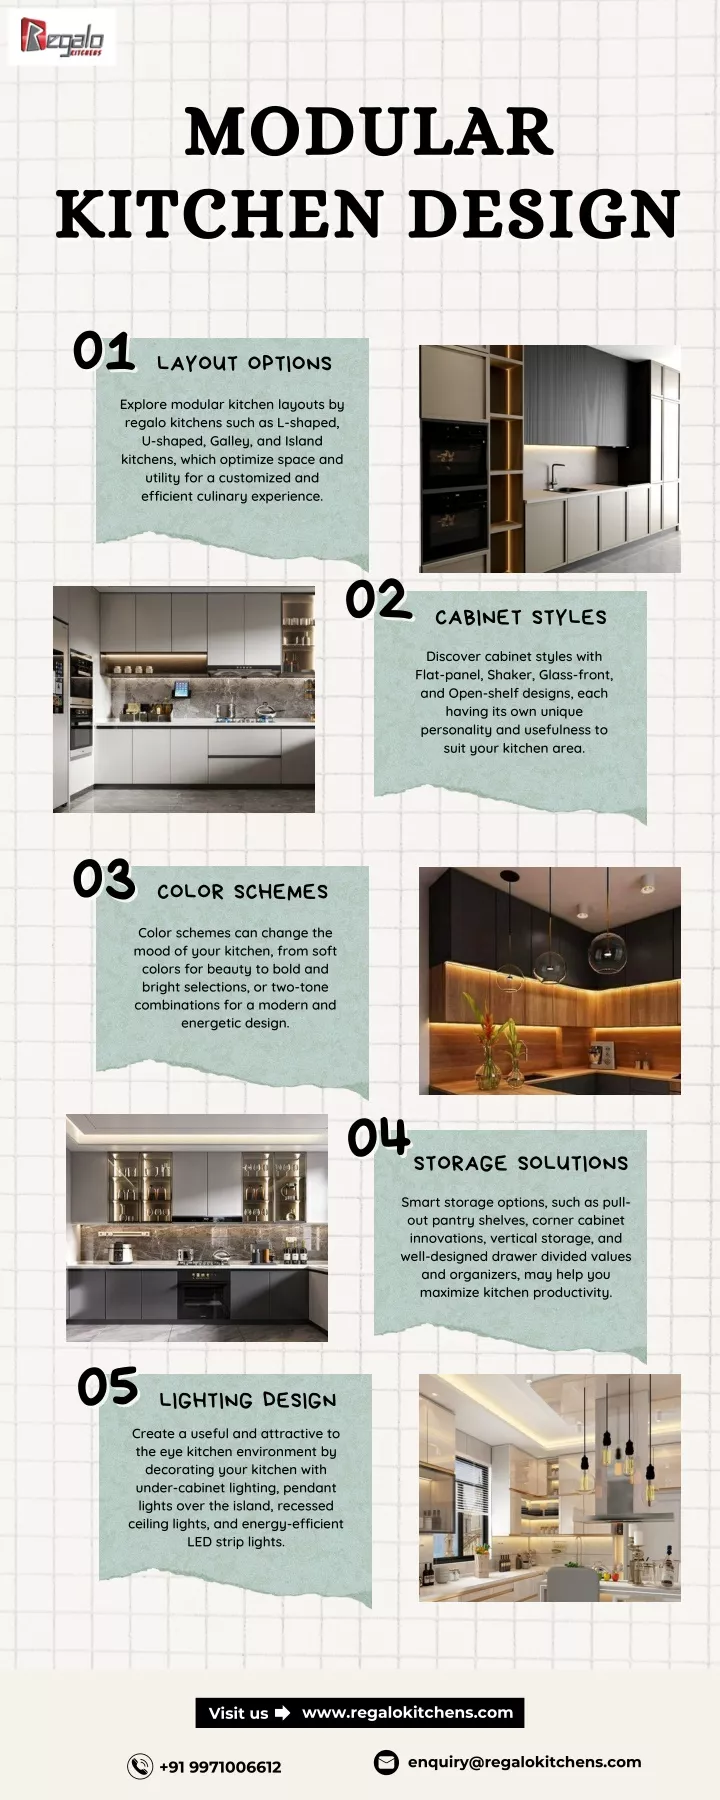 modular modular kitchen design kitchen design